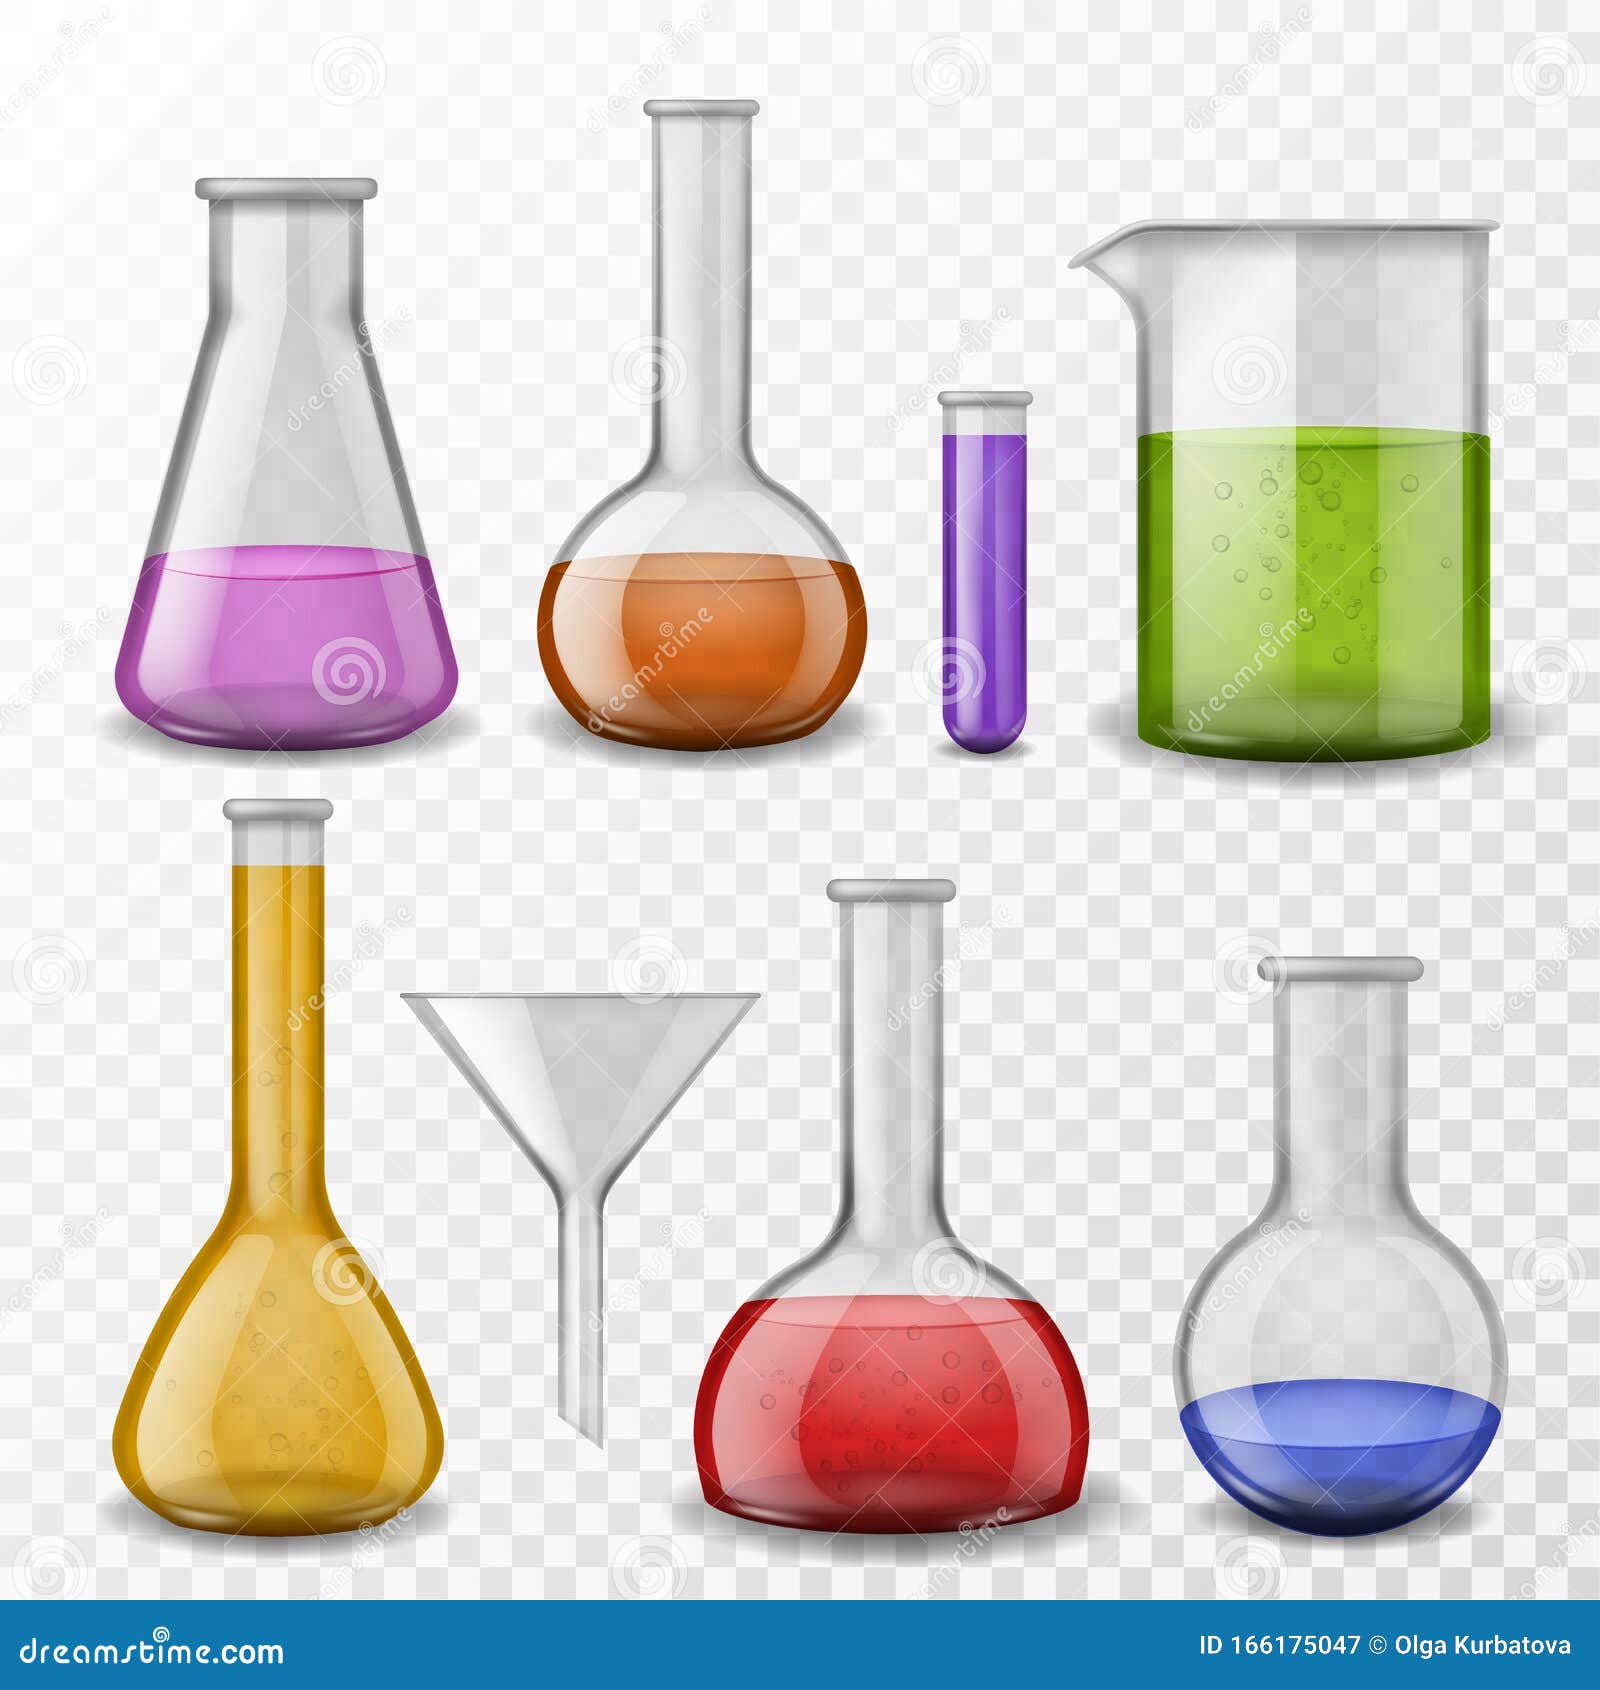 Колбы с реагентами игра. Химический фон. Цветная лаборатория. Вертикальная химия. Лабораторная посуда тест с картинками.